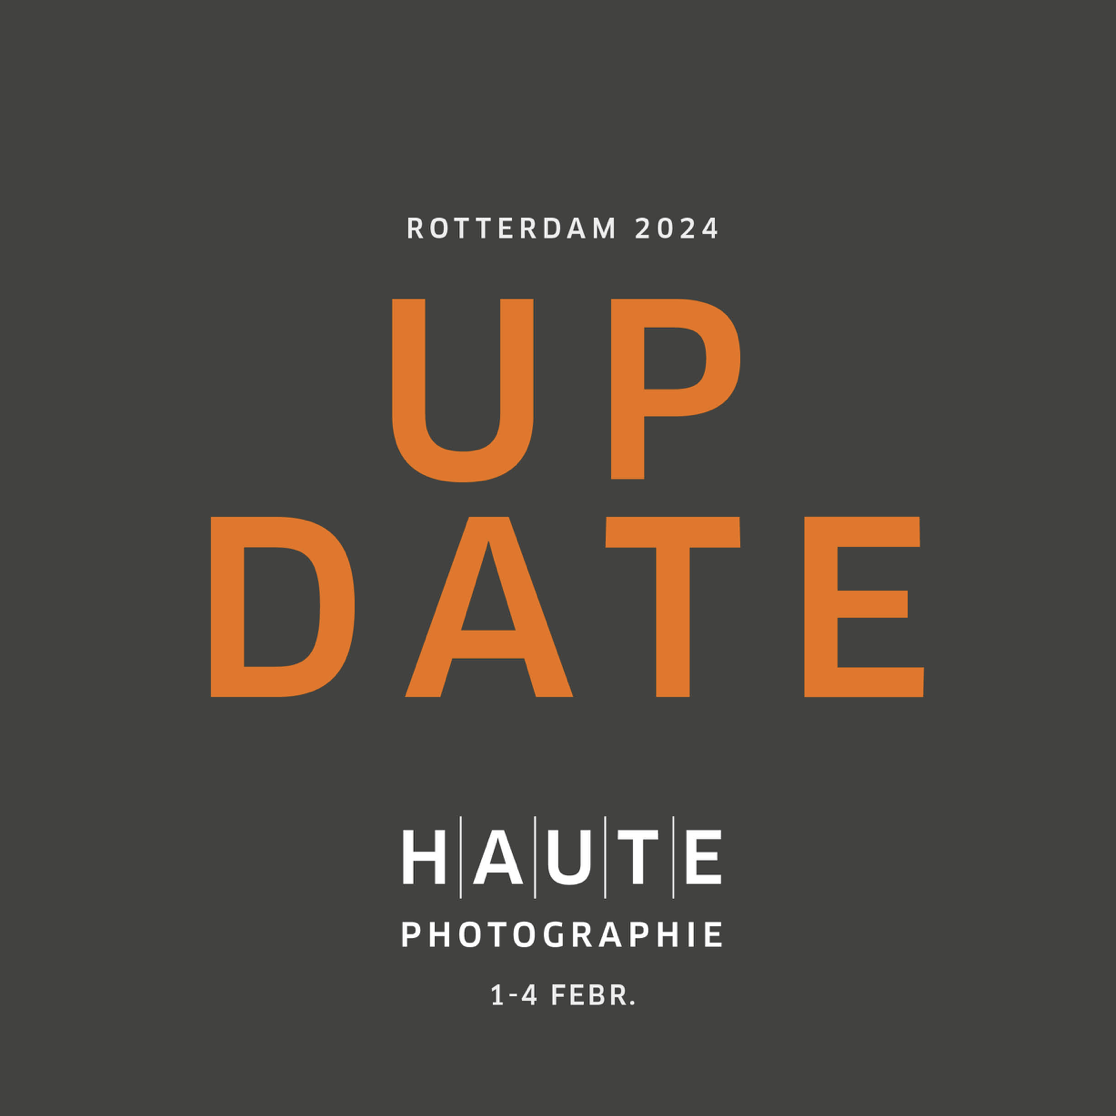 Haute Photographie X Rotterdam Art Week